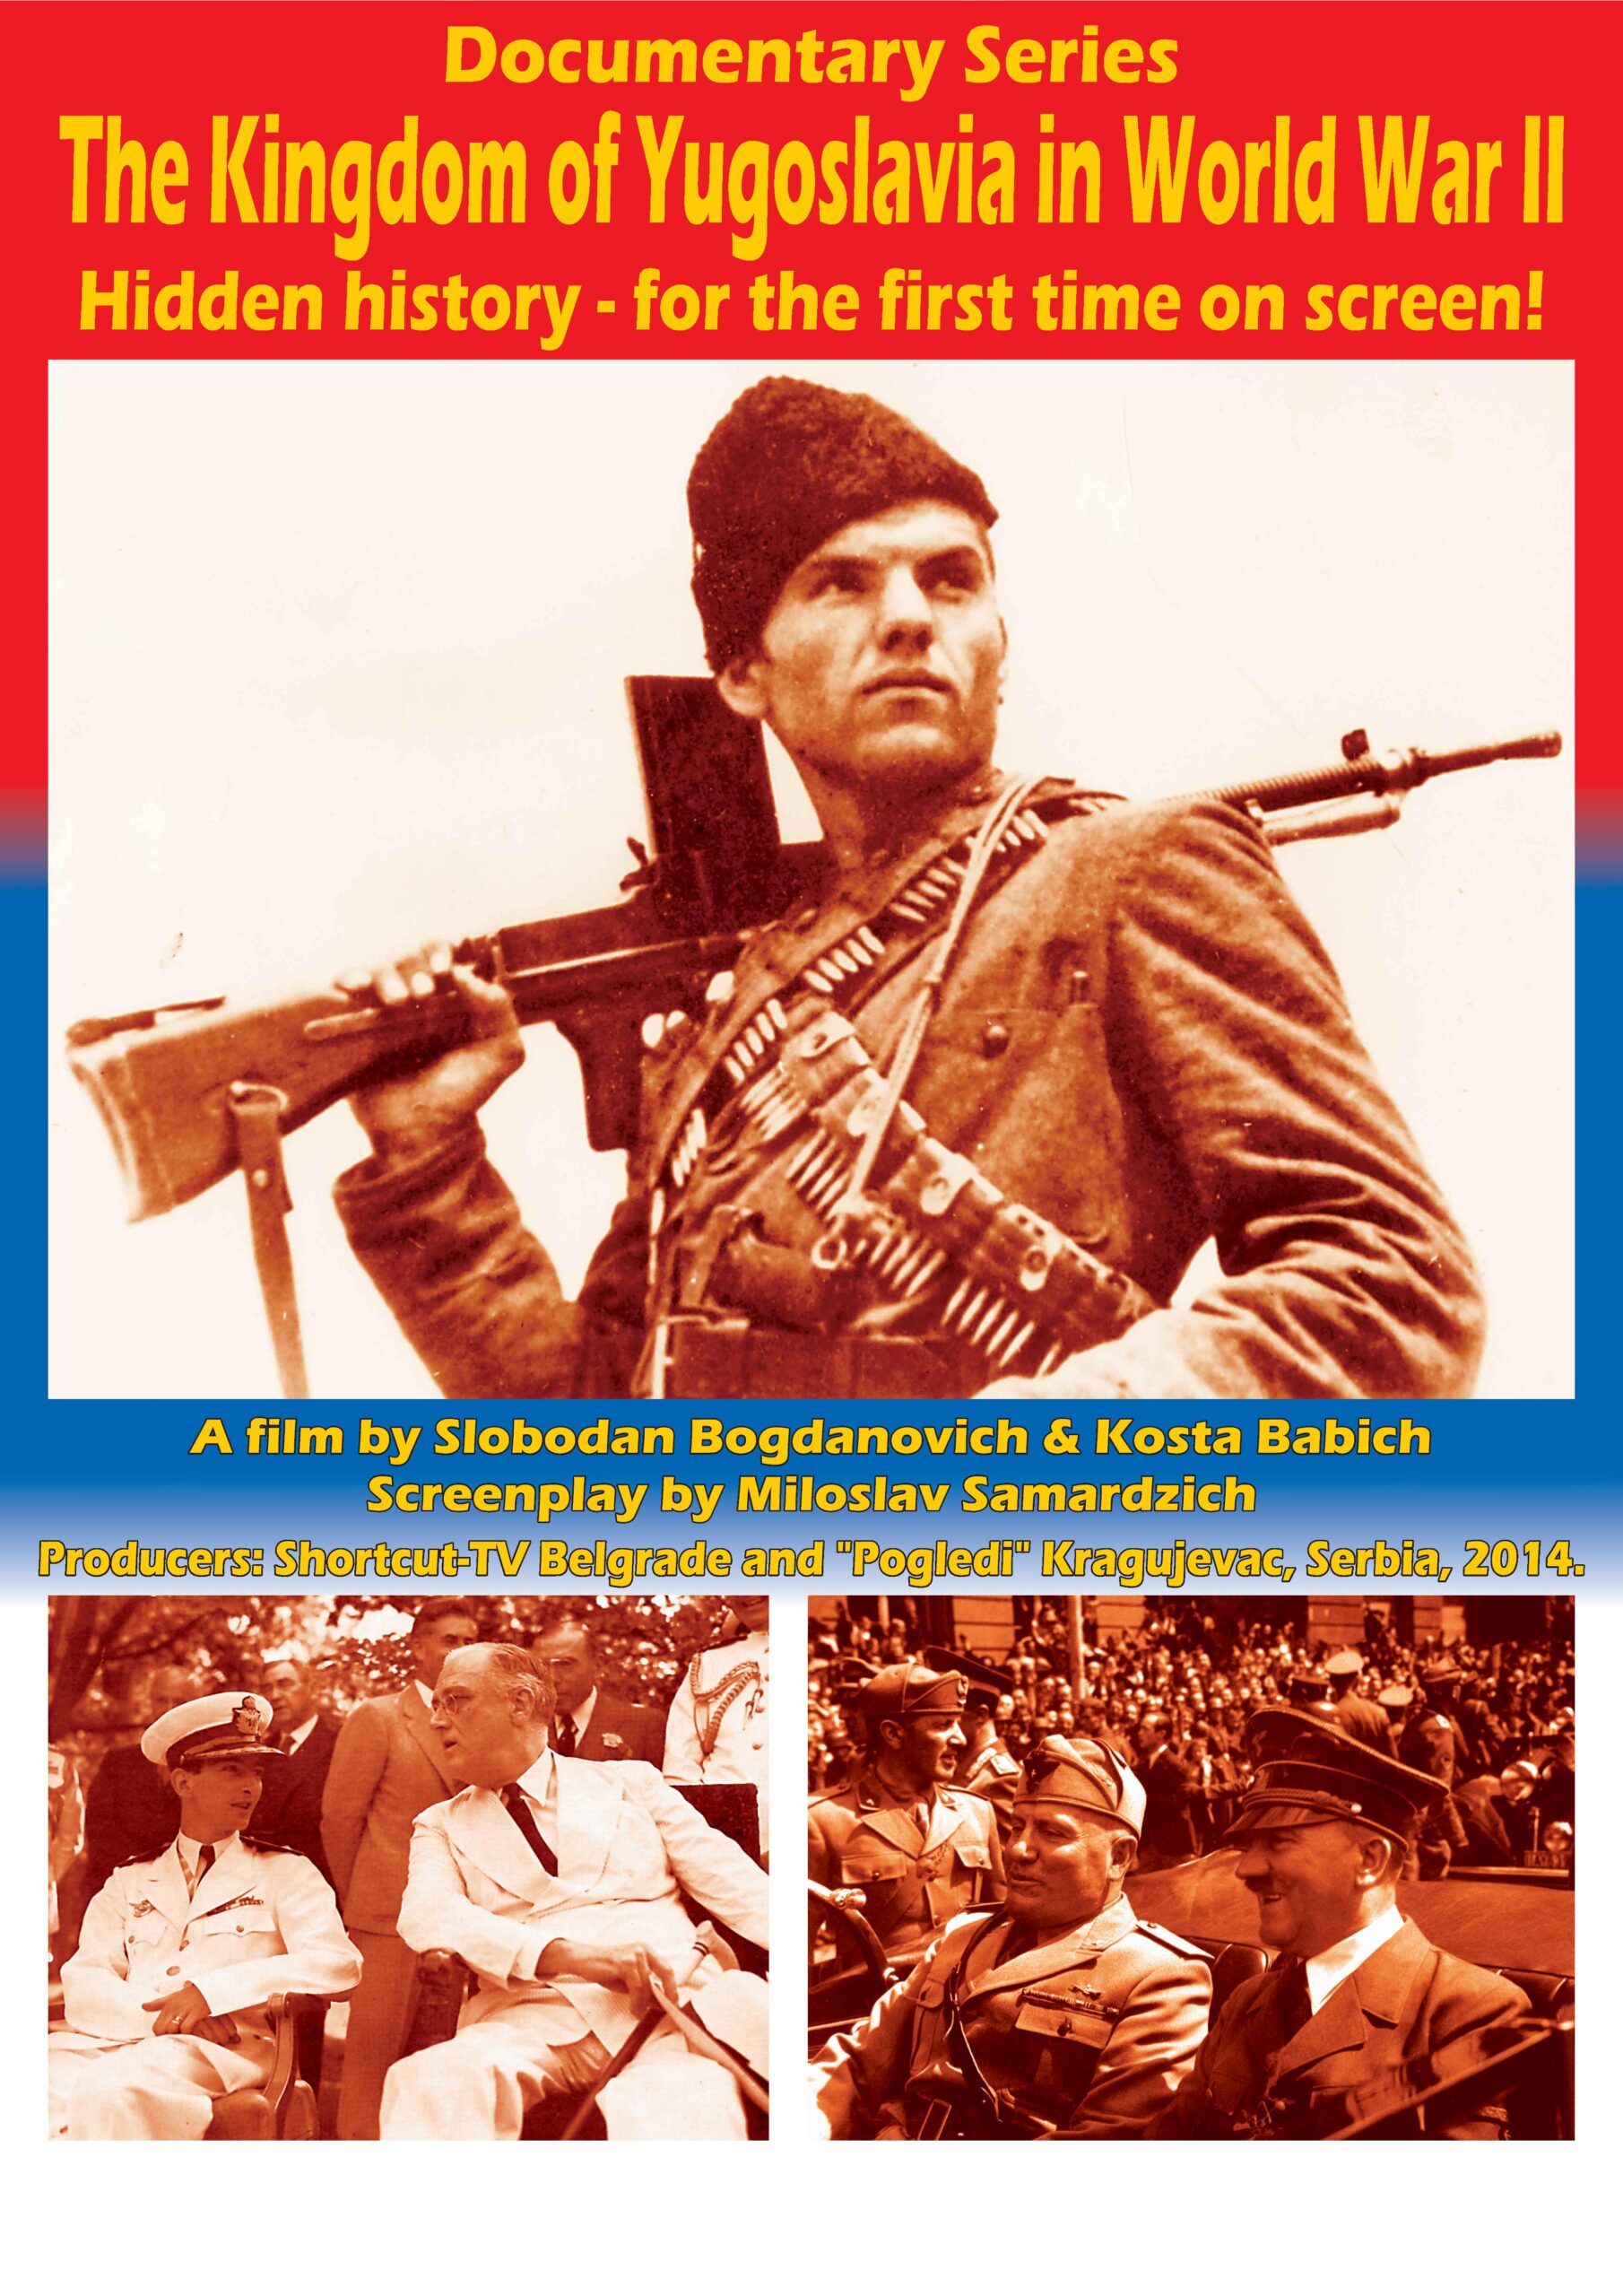 Промоција нове документарне серије „Краљевина Југославијa у Другом светском рату“ – Недеља, 6. април 2014.